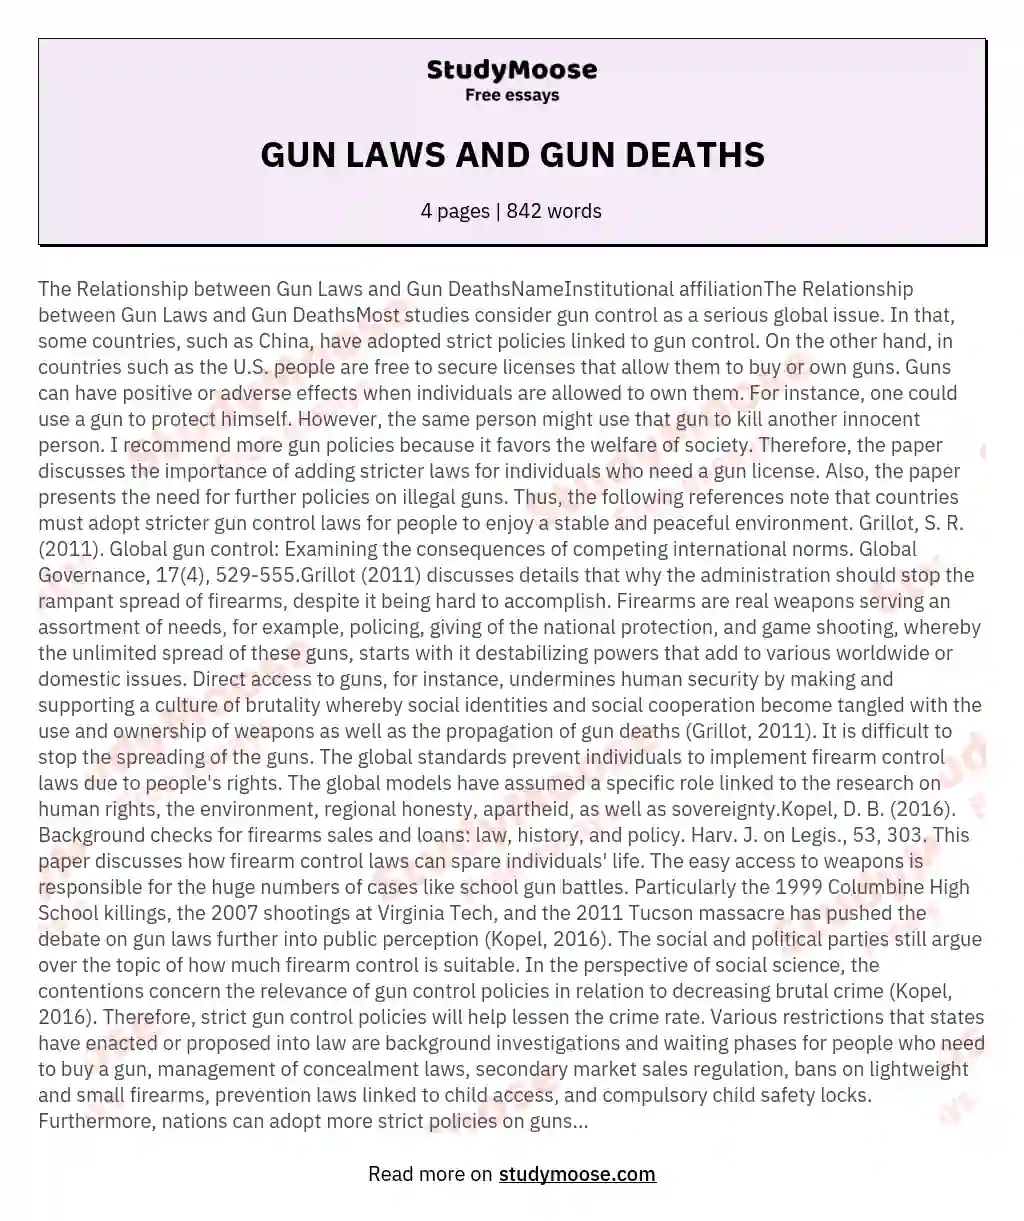 GUN LAWS AND GUN DEATHS essay